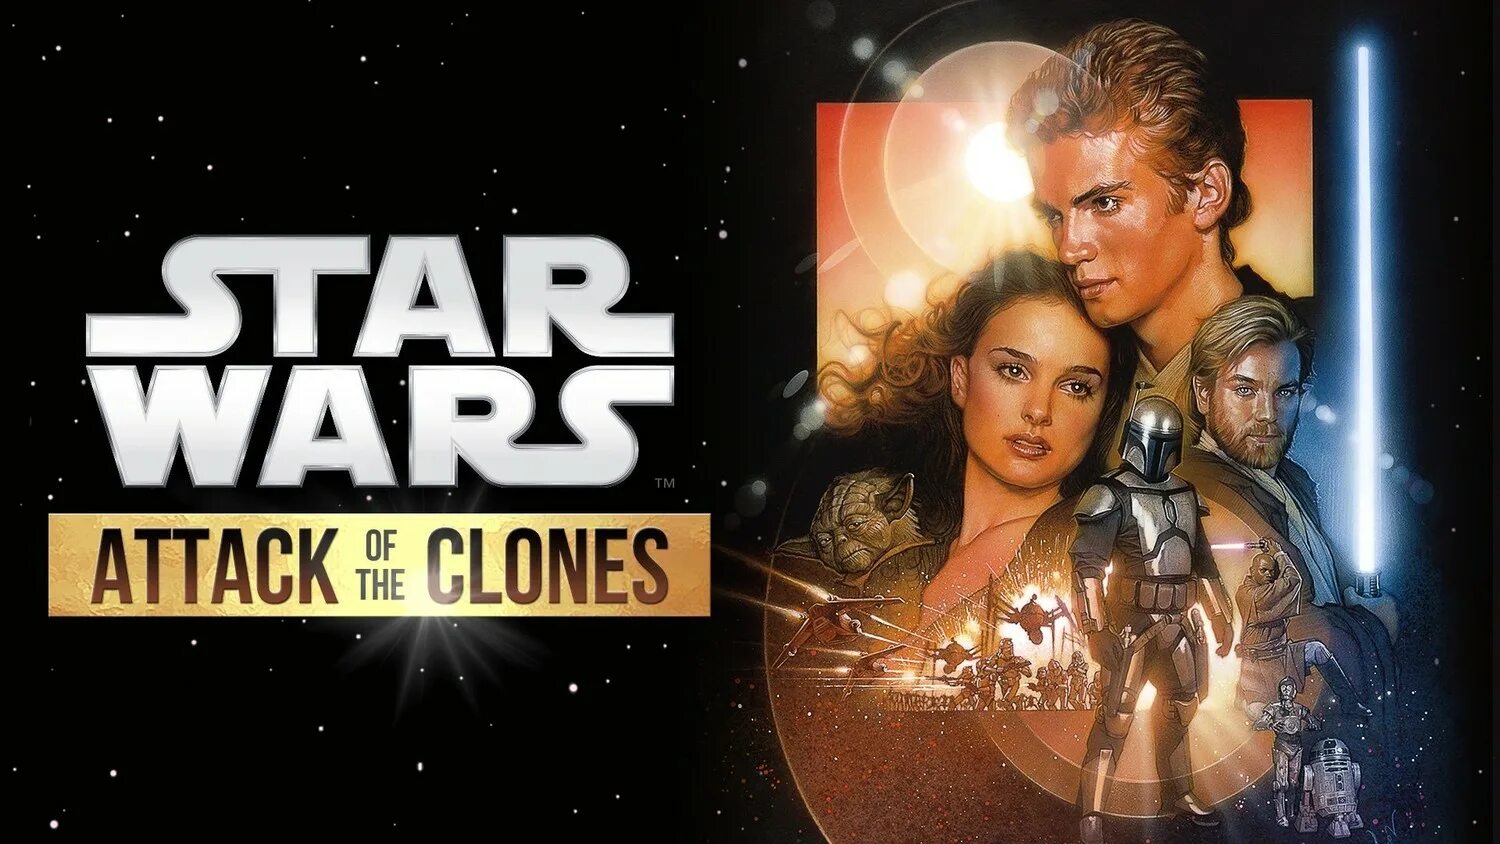 Звёздные войны. Эпизод II: атака клонов. Постер Звездные войны 2 атака клонов Star Wars Episode II - Attack of the Clones (2002). Звёздные войны эпизод 2 атака клонов Постер. Звёздные войны атака клонов Постер.